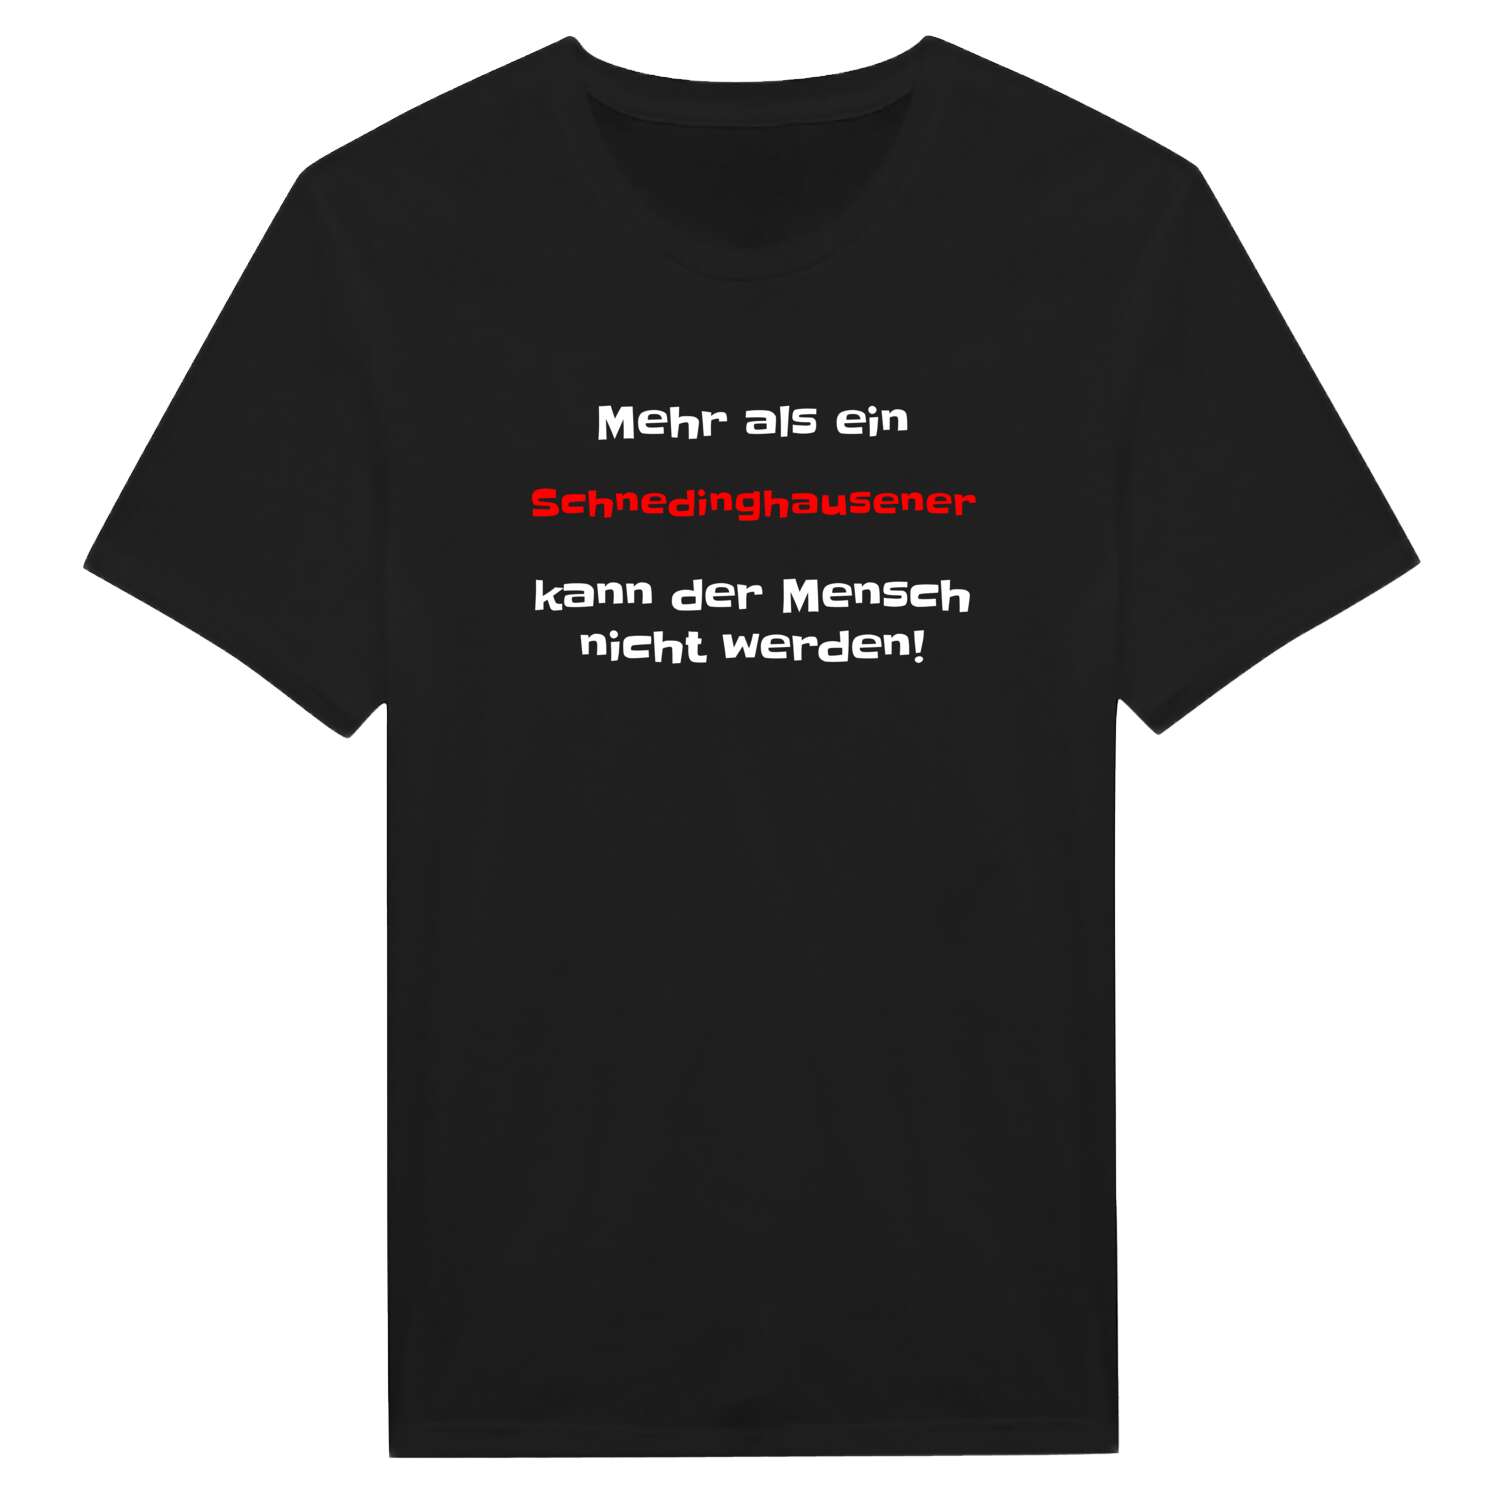 Schnedinghausen T-Shirt »Mehr als ein«